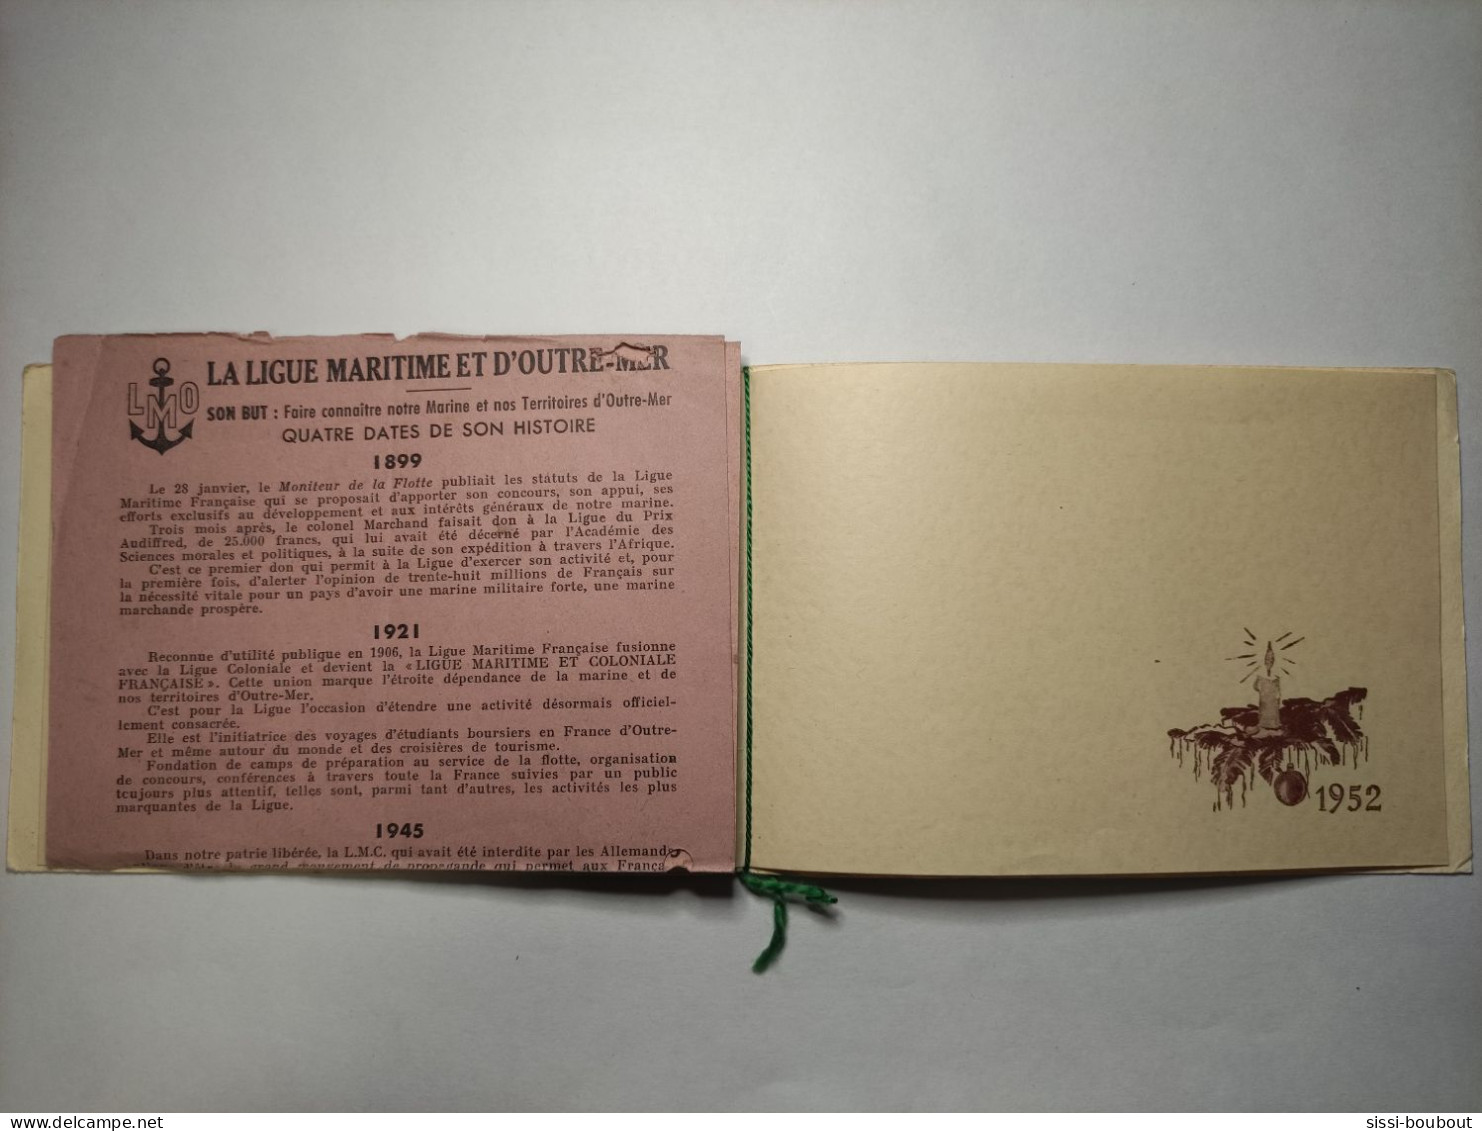 Bulletin D'Adhésion Pour "La Ligue Maritime Et D'Outre-Mer" Accompagné D'une Carte “Les Forces Maritimes Du Rhin” 1952 - Mitgliedskarten